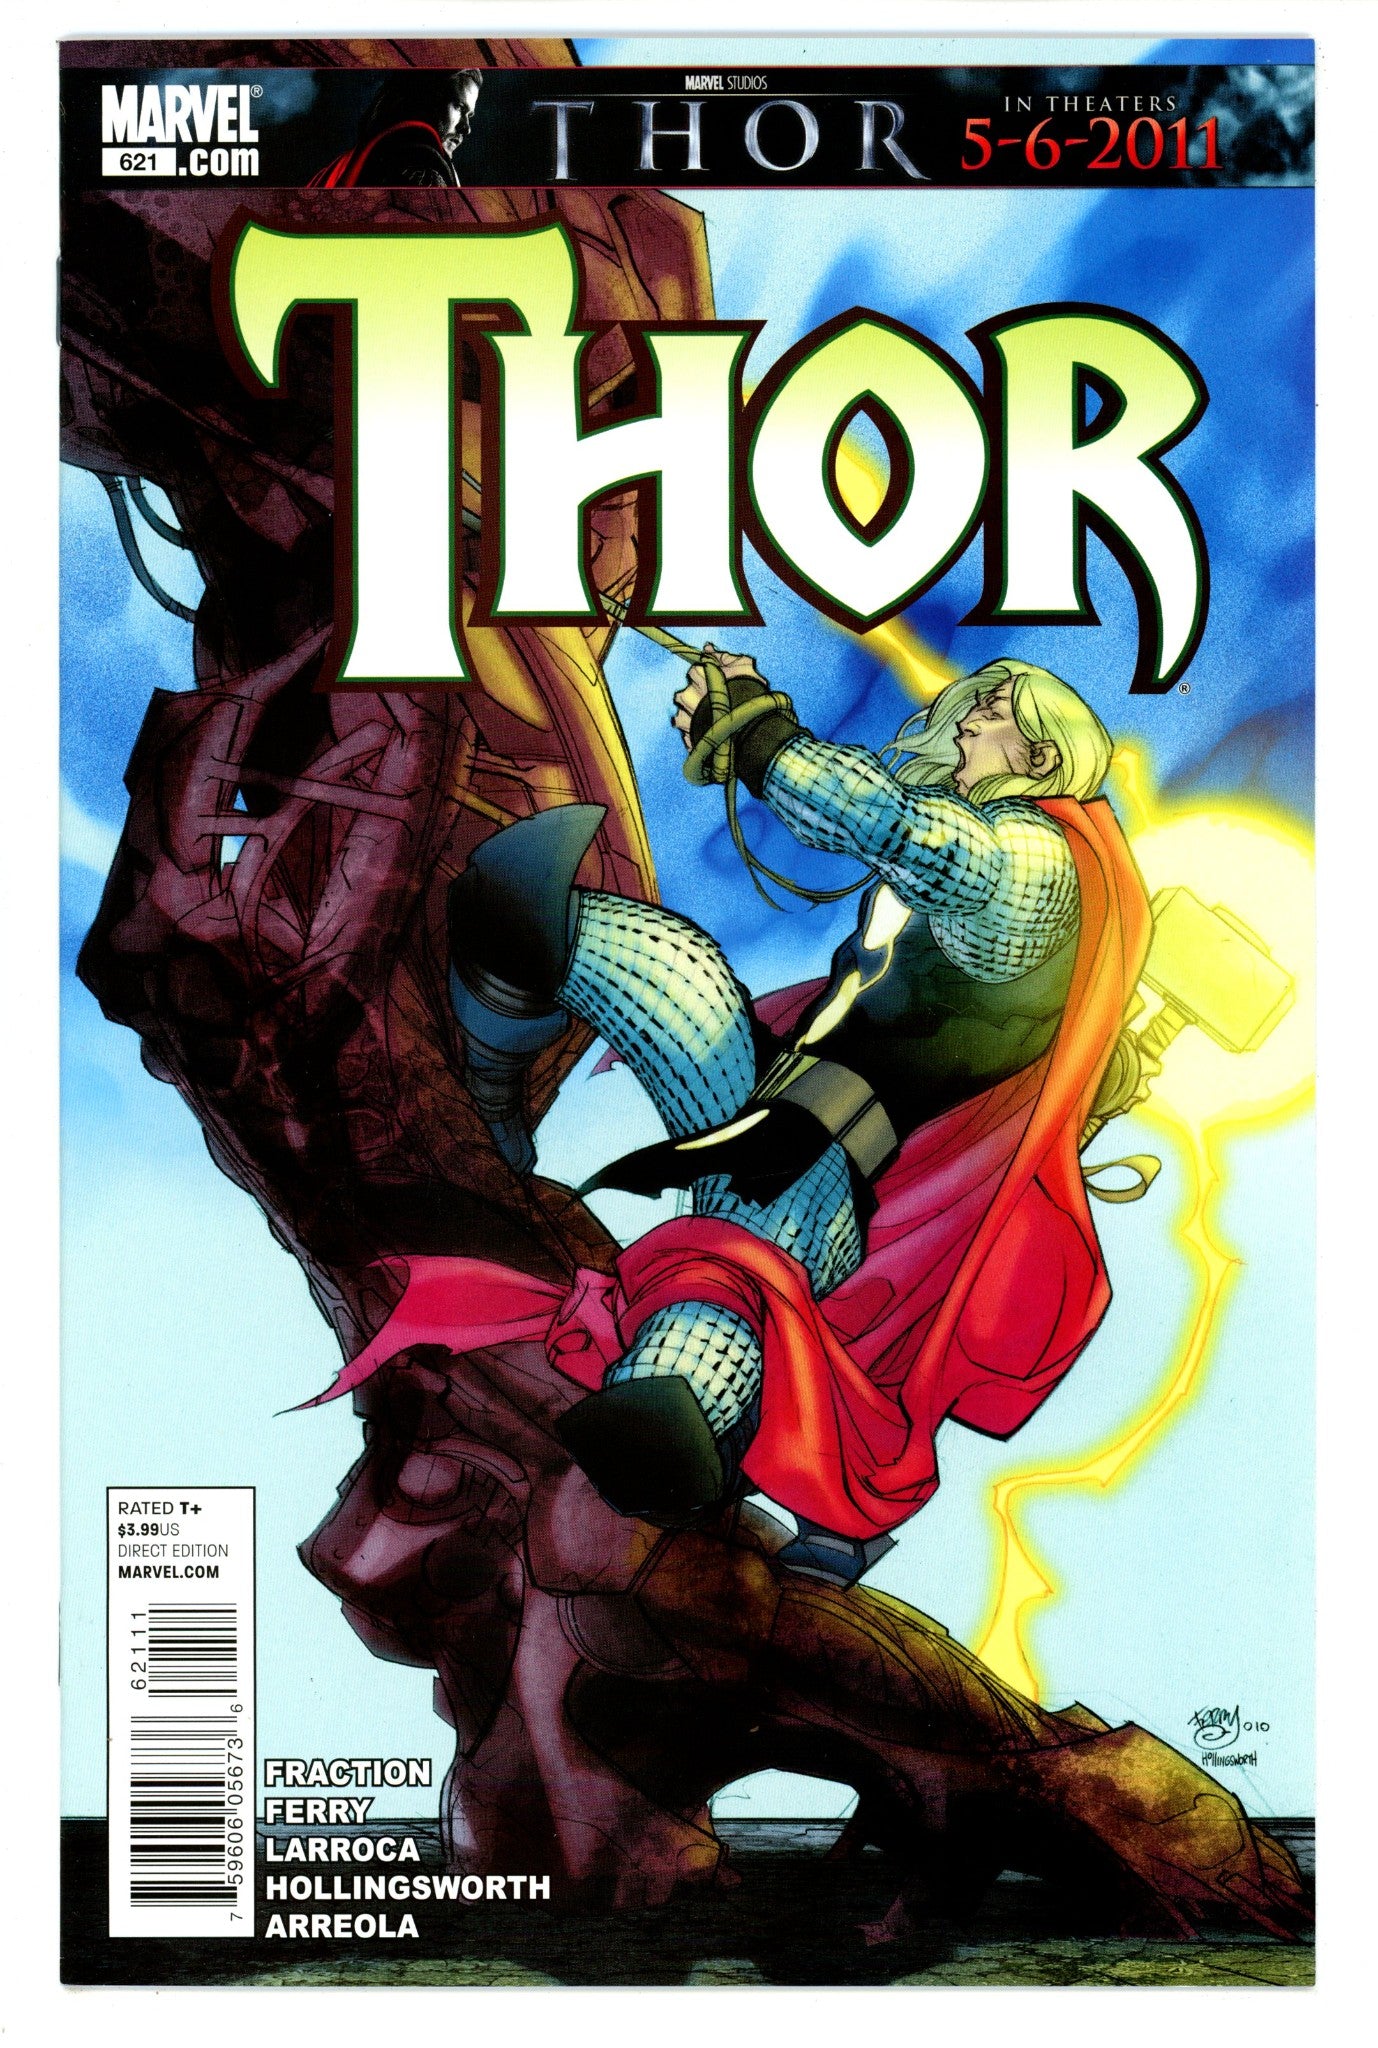 Thor Vol 3 621 High Grade (2011) 